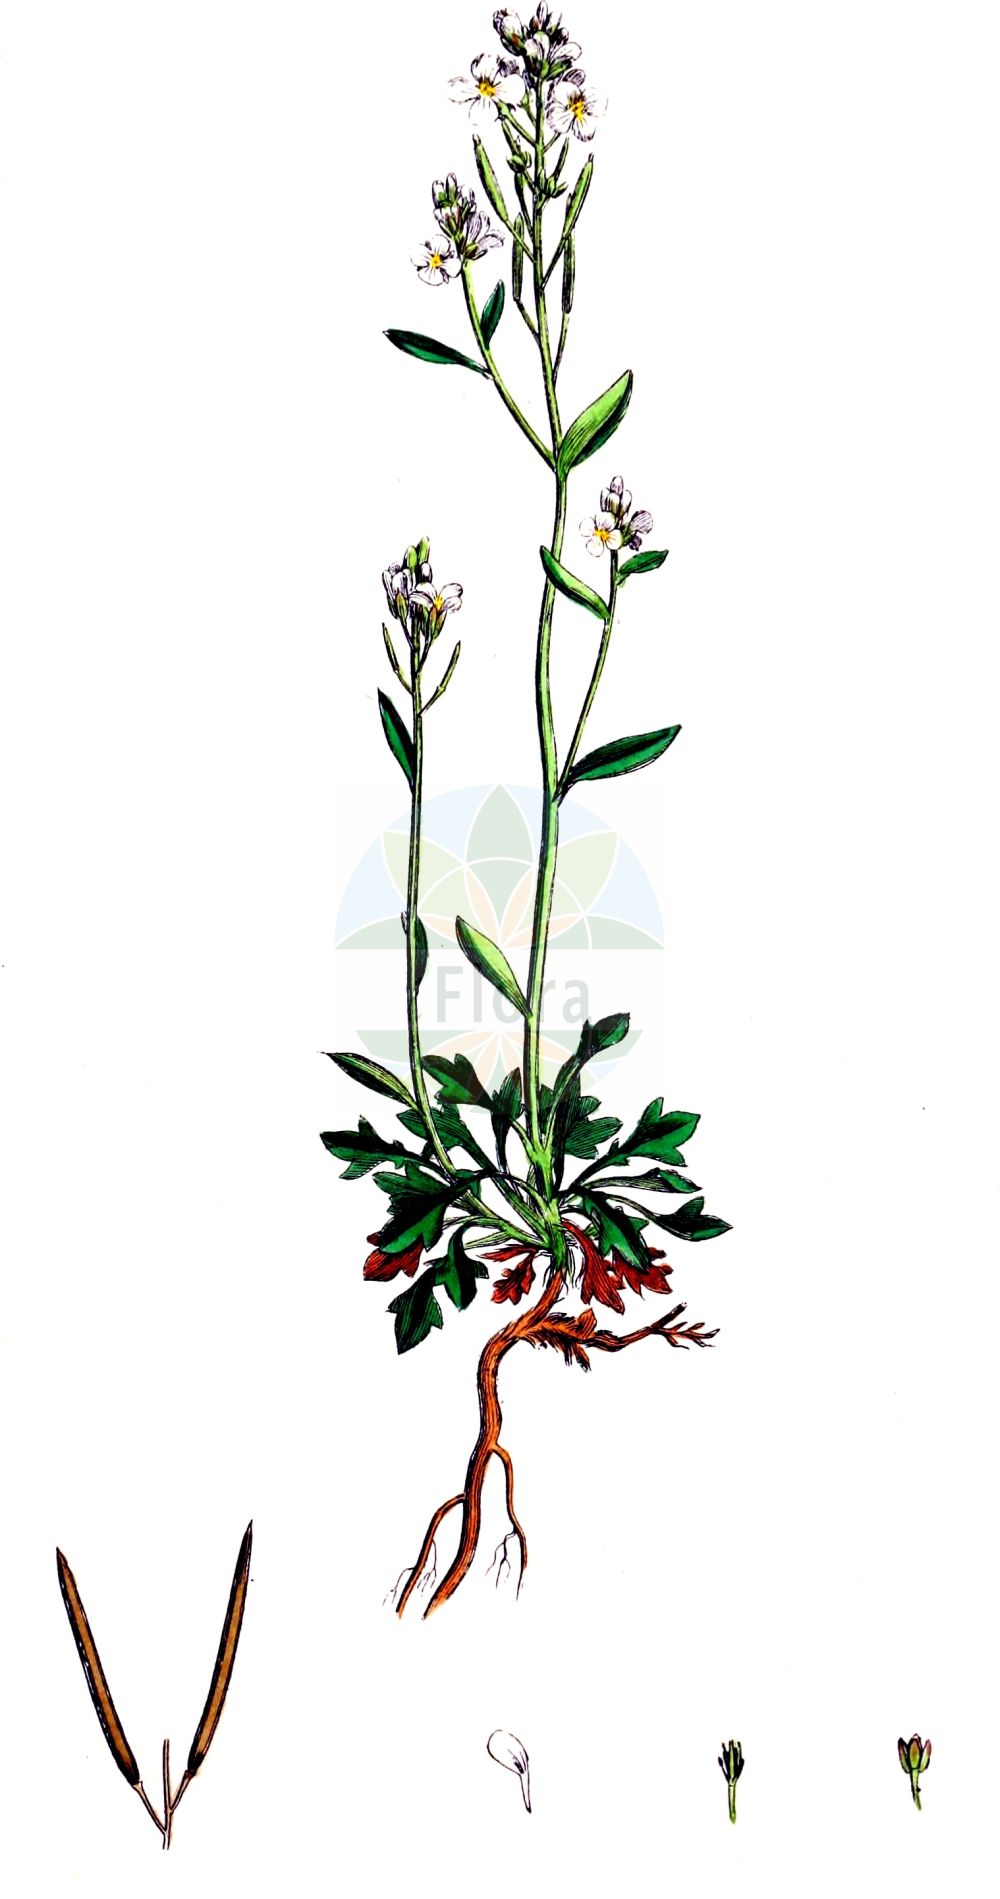 Historische Abbildung von Arabidopsis petraea (Felsen-Schmalwand - Lyrate Rockcress). Das Bild zeigt Blatt, Bluete, Frucht und Same. ---- Historical Drawing of Arabidopsis petraea (Felsen-Schmalwand - Lyrate Rockcress). The image is showing leaf, flower, fruit and seed.(Arabidopsis petraea,Felsen-Schmalwand,Lyrate Rockcress,Arabidopsis petraea,Arabis petraea,Arabis septentrionalis,Cardamine petraea,Cardaminopsis hispida,Cardaminopsis petraea,Cardaminopsis septentrionalis,Felsen-Schmalwand,Lyrate Rockcress,Arabidopsis,Schmalwand,Rockcress,Brassicaceae,Kreuzblütler,Cabbage family,Blatt,Bluete,Frucht,Same,leaf,flower,fruit,seed,Sowerby (1790-1813))